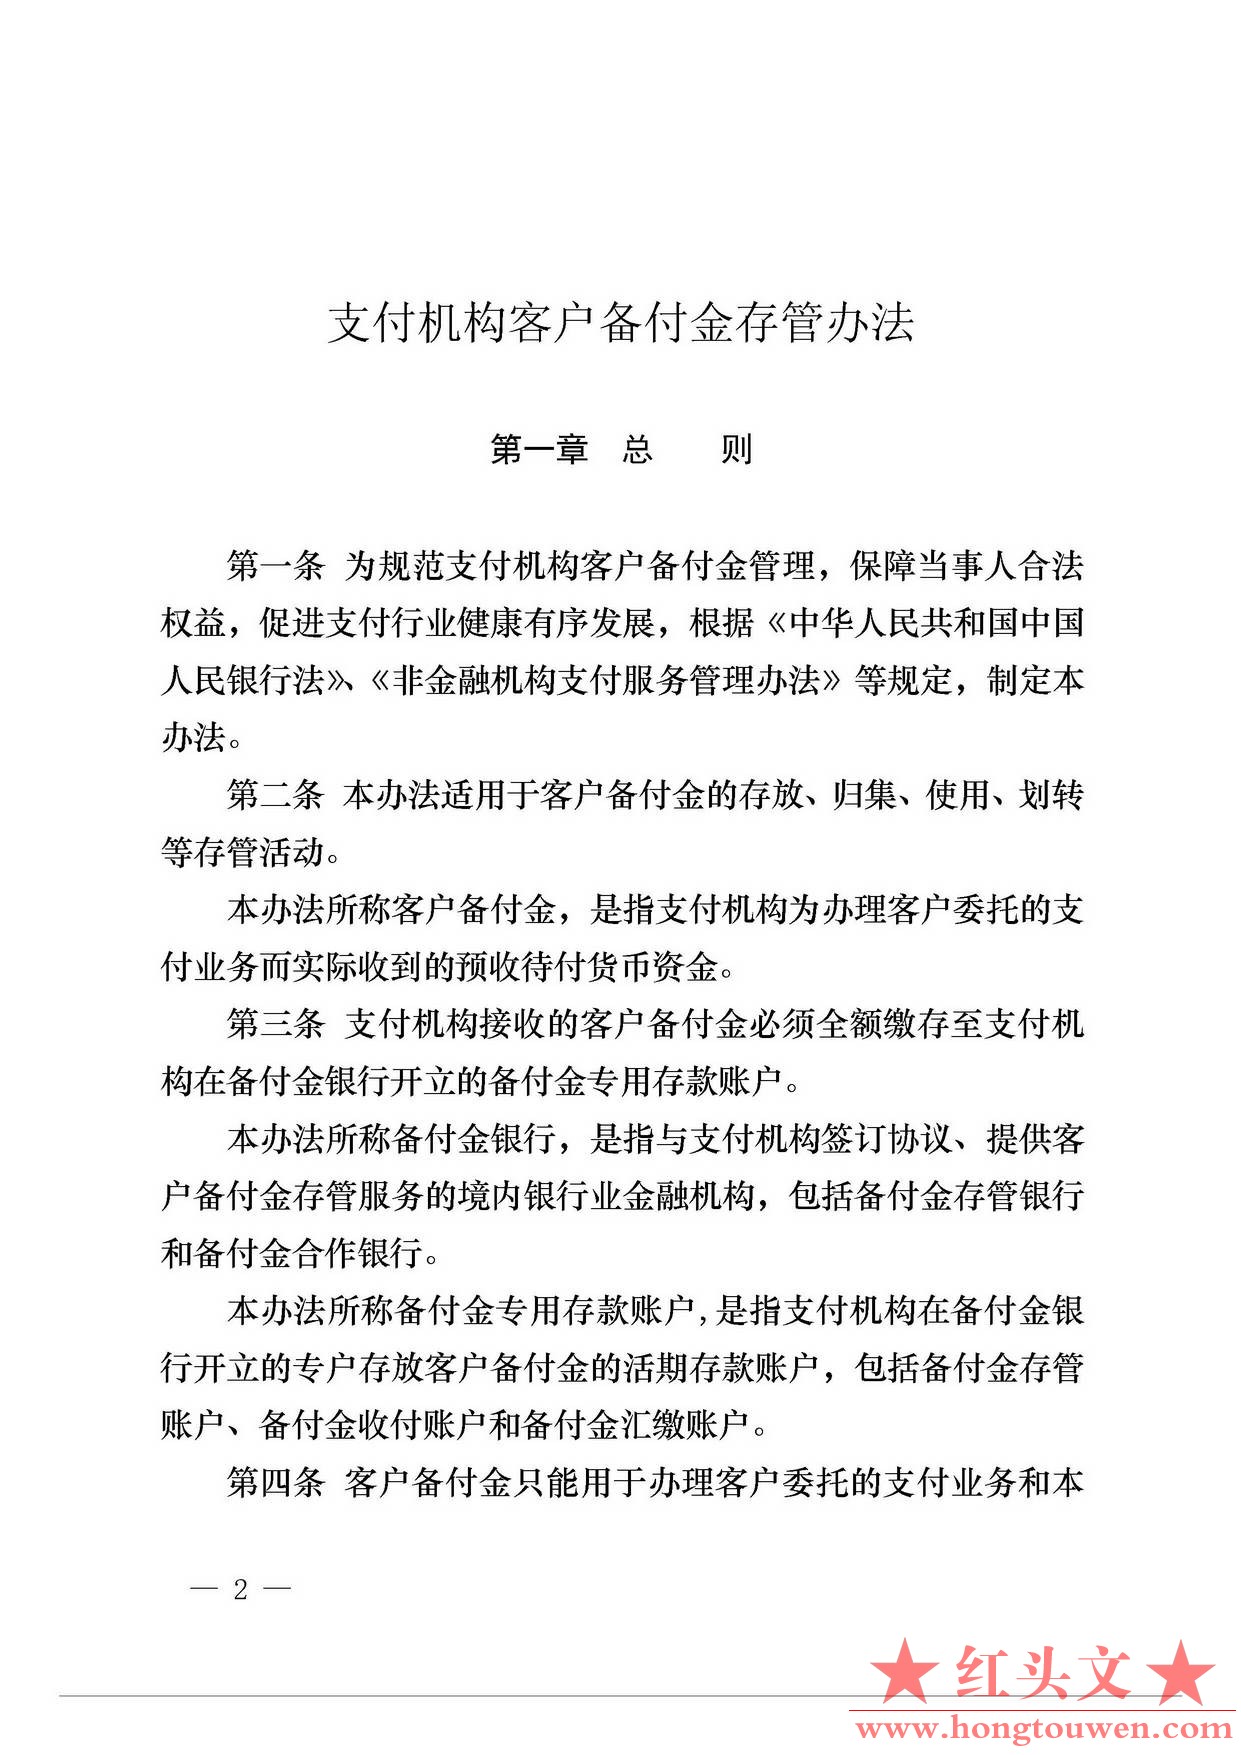 中国人民银行公告[2013]6号-《支付机构客户备付金存管办法》_页面_02.jpg.jpg